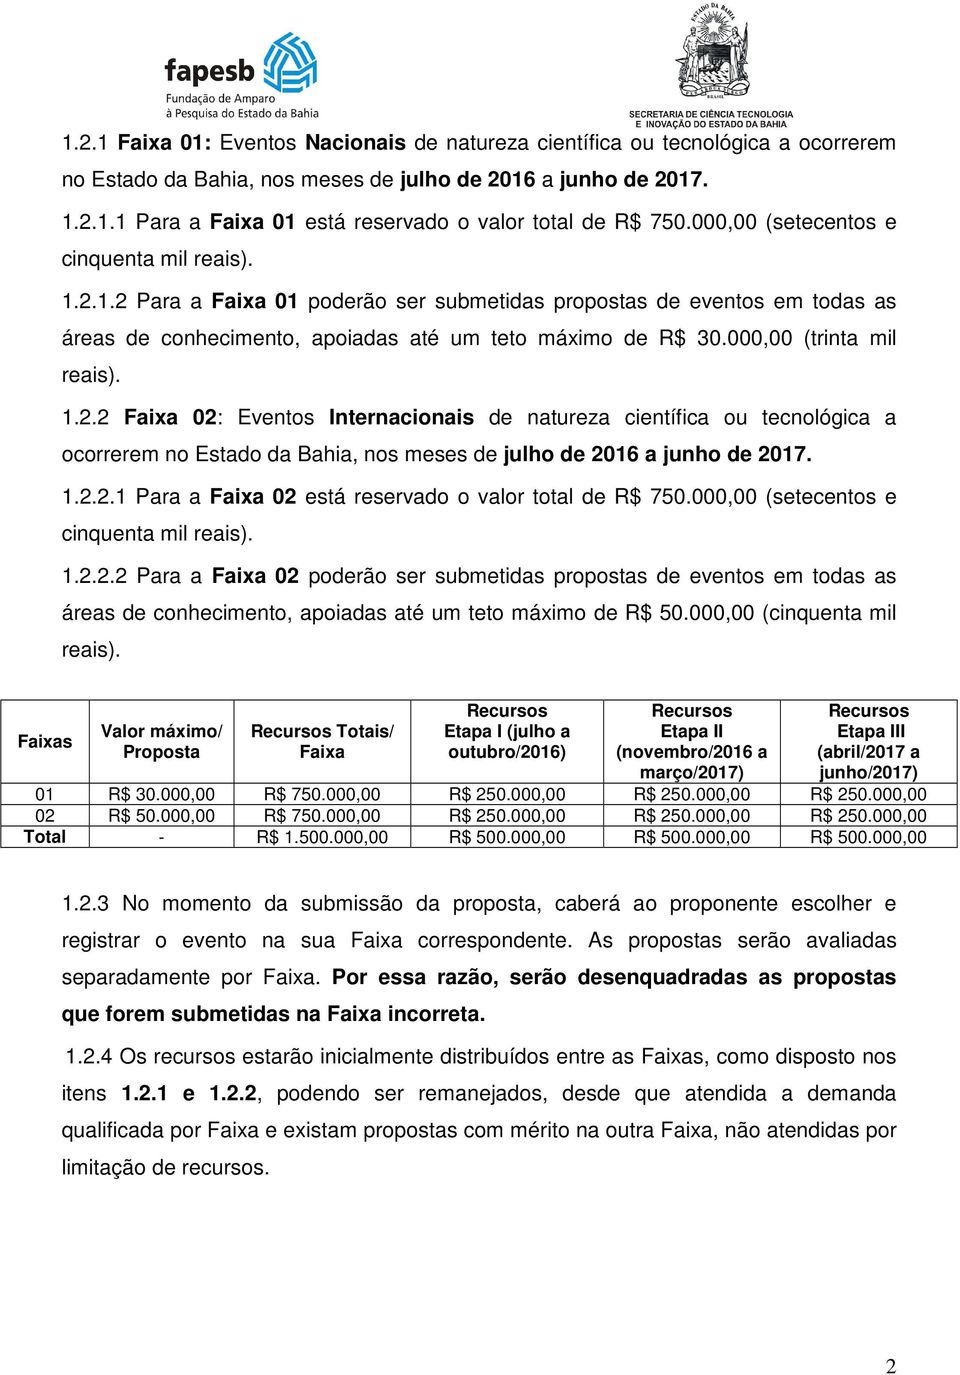 000,00 (trinta mil reais). 1.2.2 Faixa 02: Eventos Internacionais de natureza científica ou tecnológica a ocorrerem no Estado da Bahia, nos meses de julho de 2016 a junho de 2017. 1.2.2.1 Para a Faixa 02 está reservado o valor total de R$ 750.